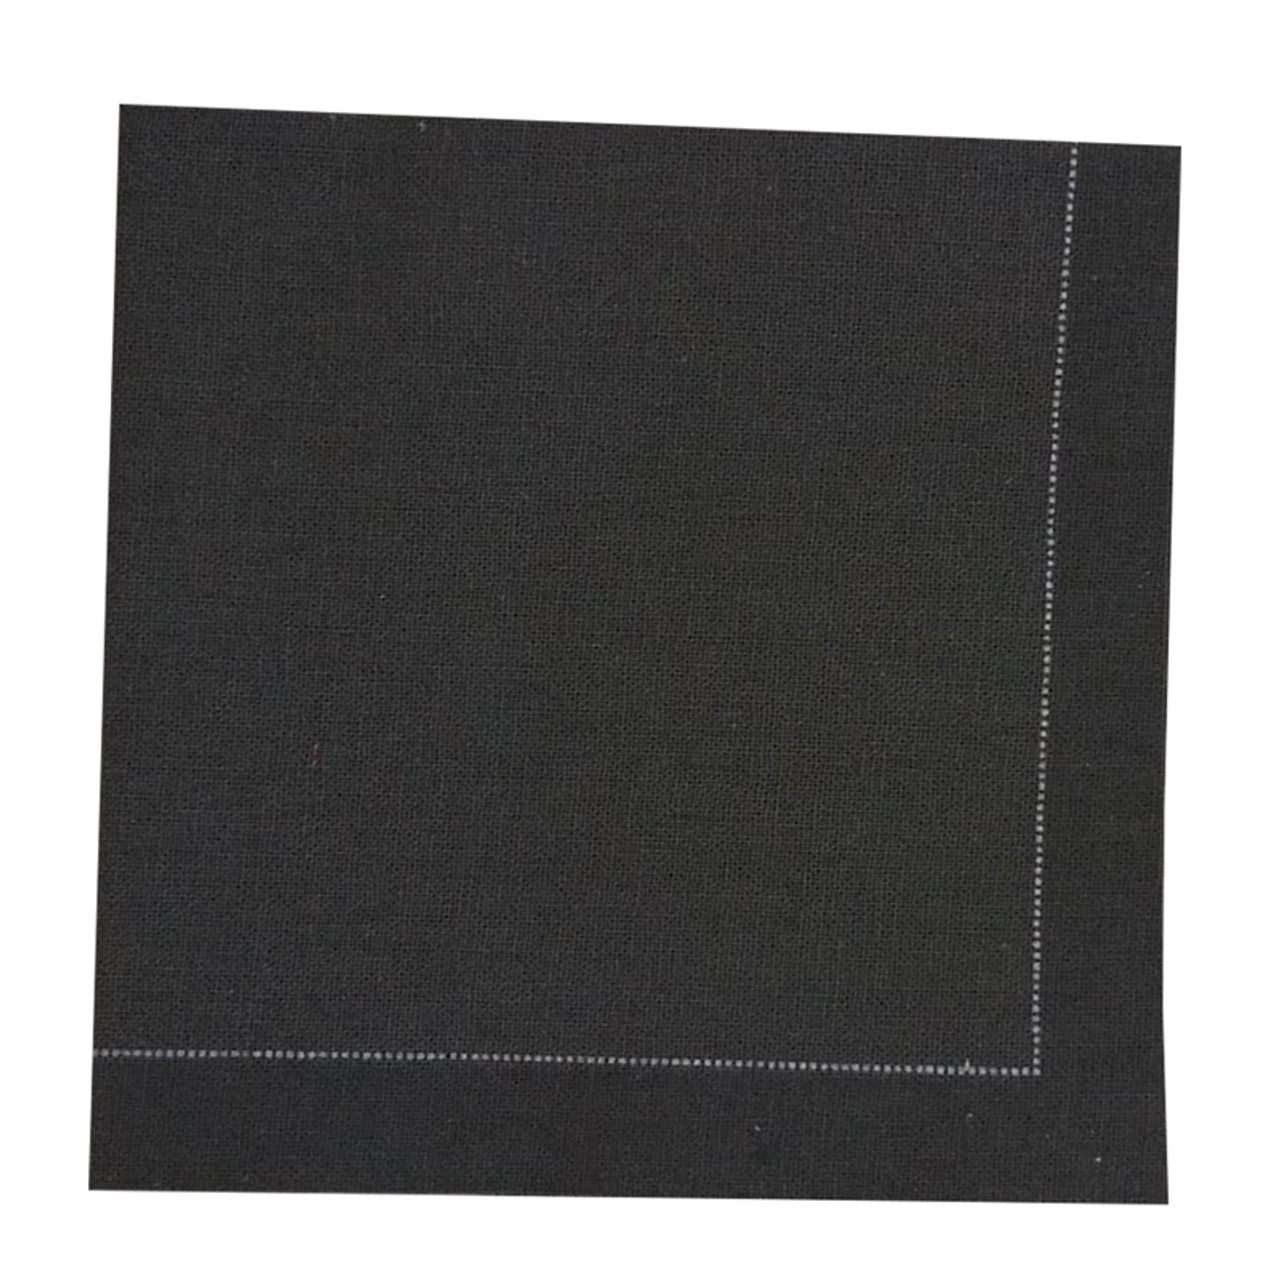 Black cotton napkin - 15.8 x 15.8